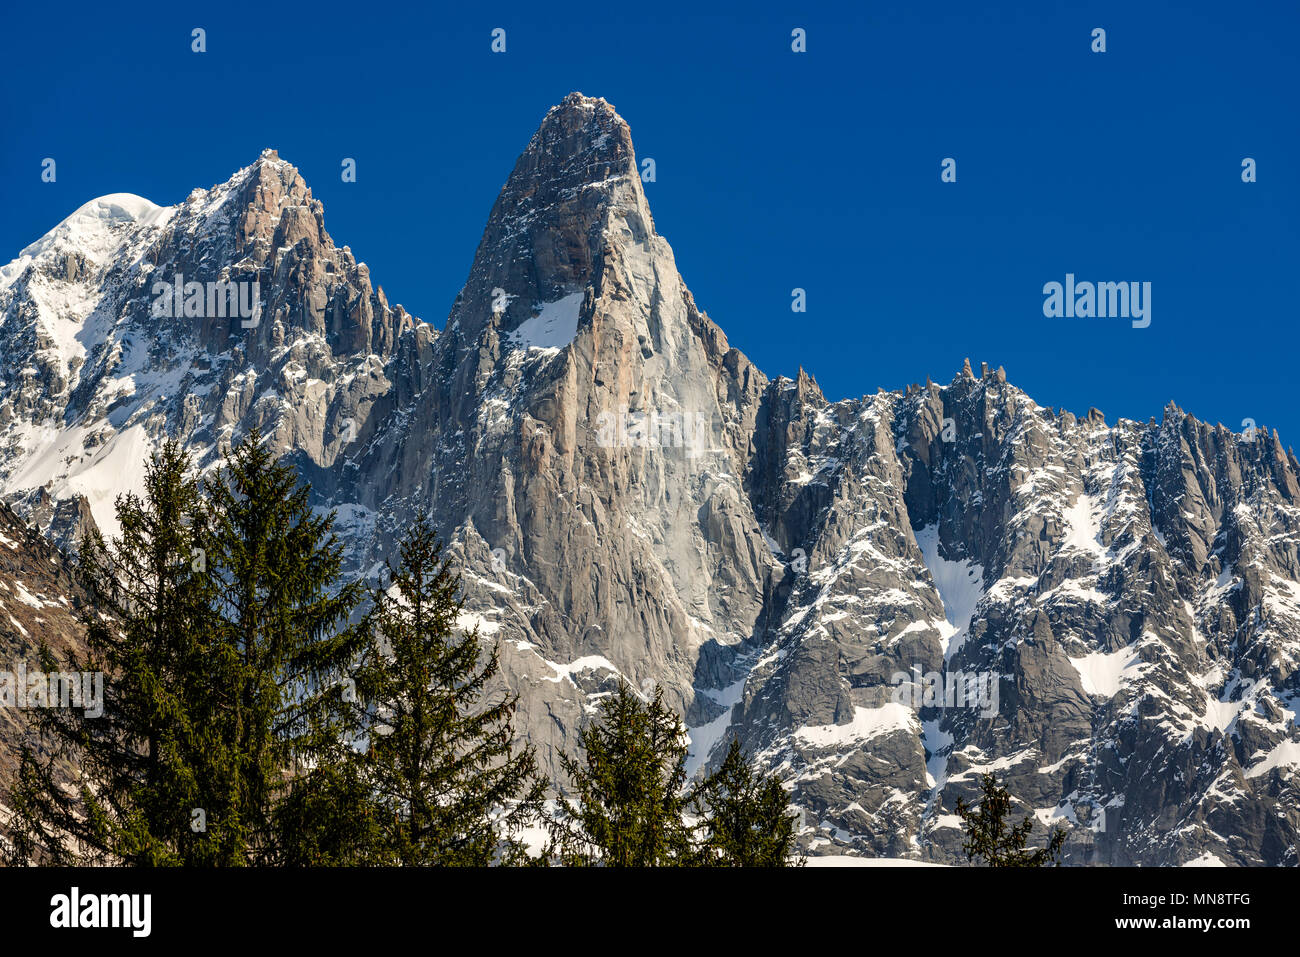 Le rocce a strapiombo di Aiguilles des drus e Aiguille Verte (sinistra) nella catena montuosa del Monte Bianco. Chamonix, Alta Savoia (Alta Savoia), Alpi, Francia Foto Stock